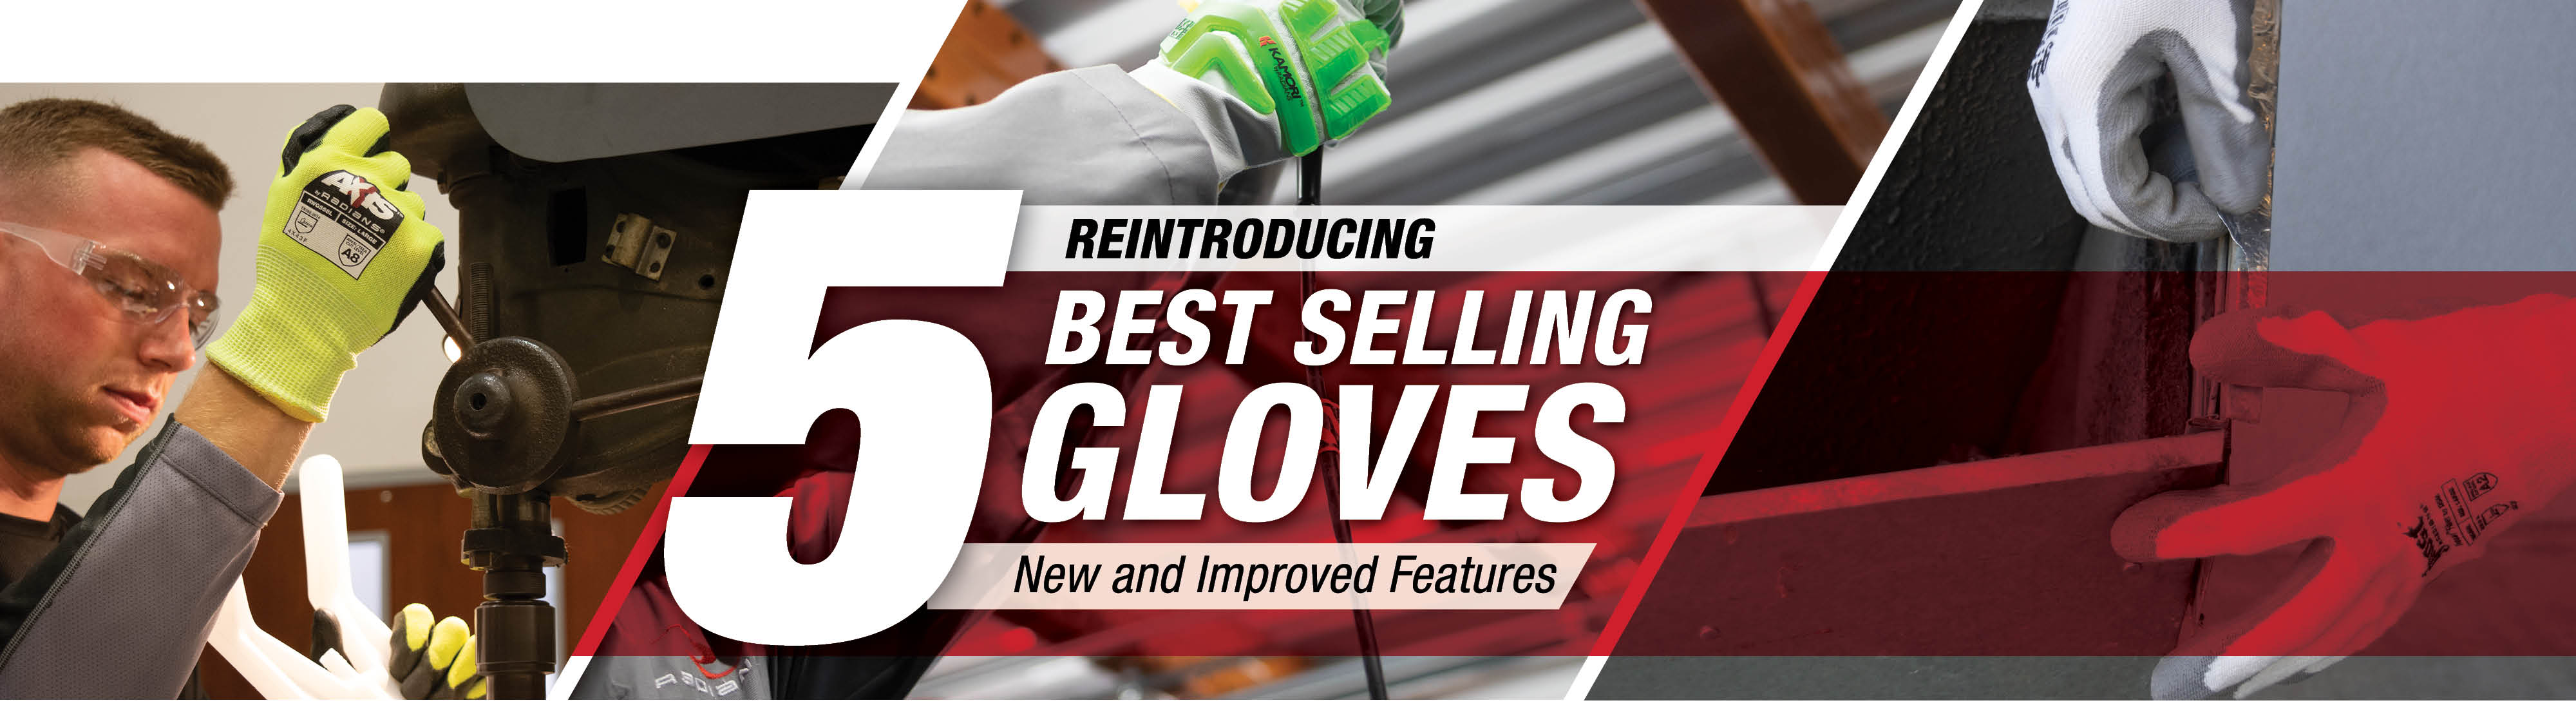 Glove Update Header Image